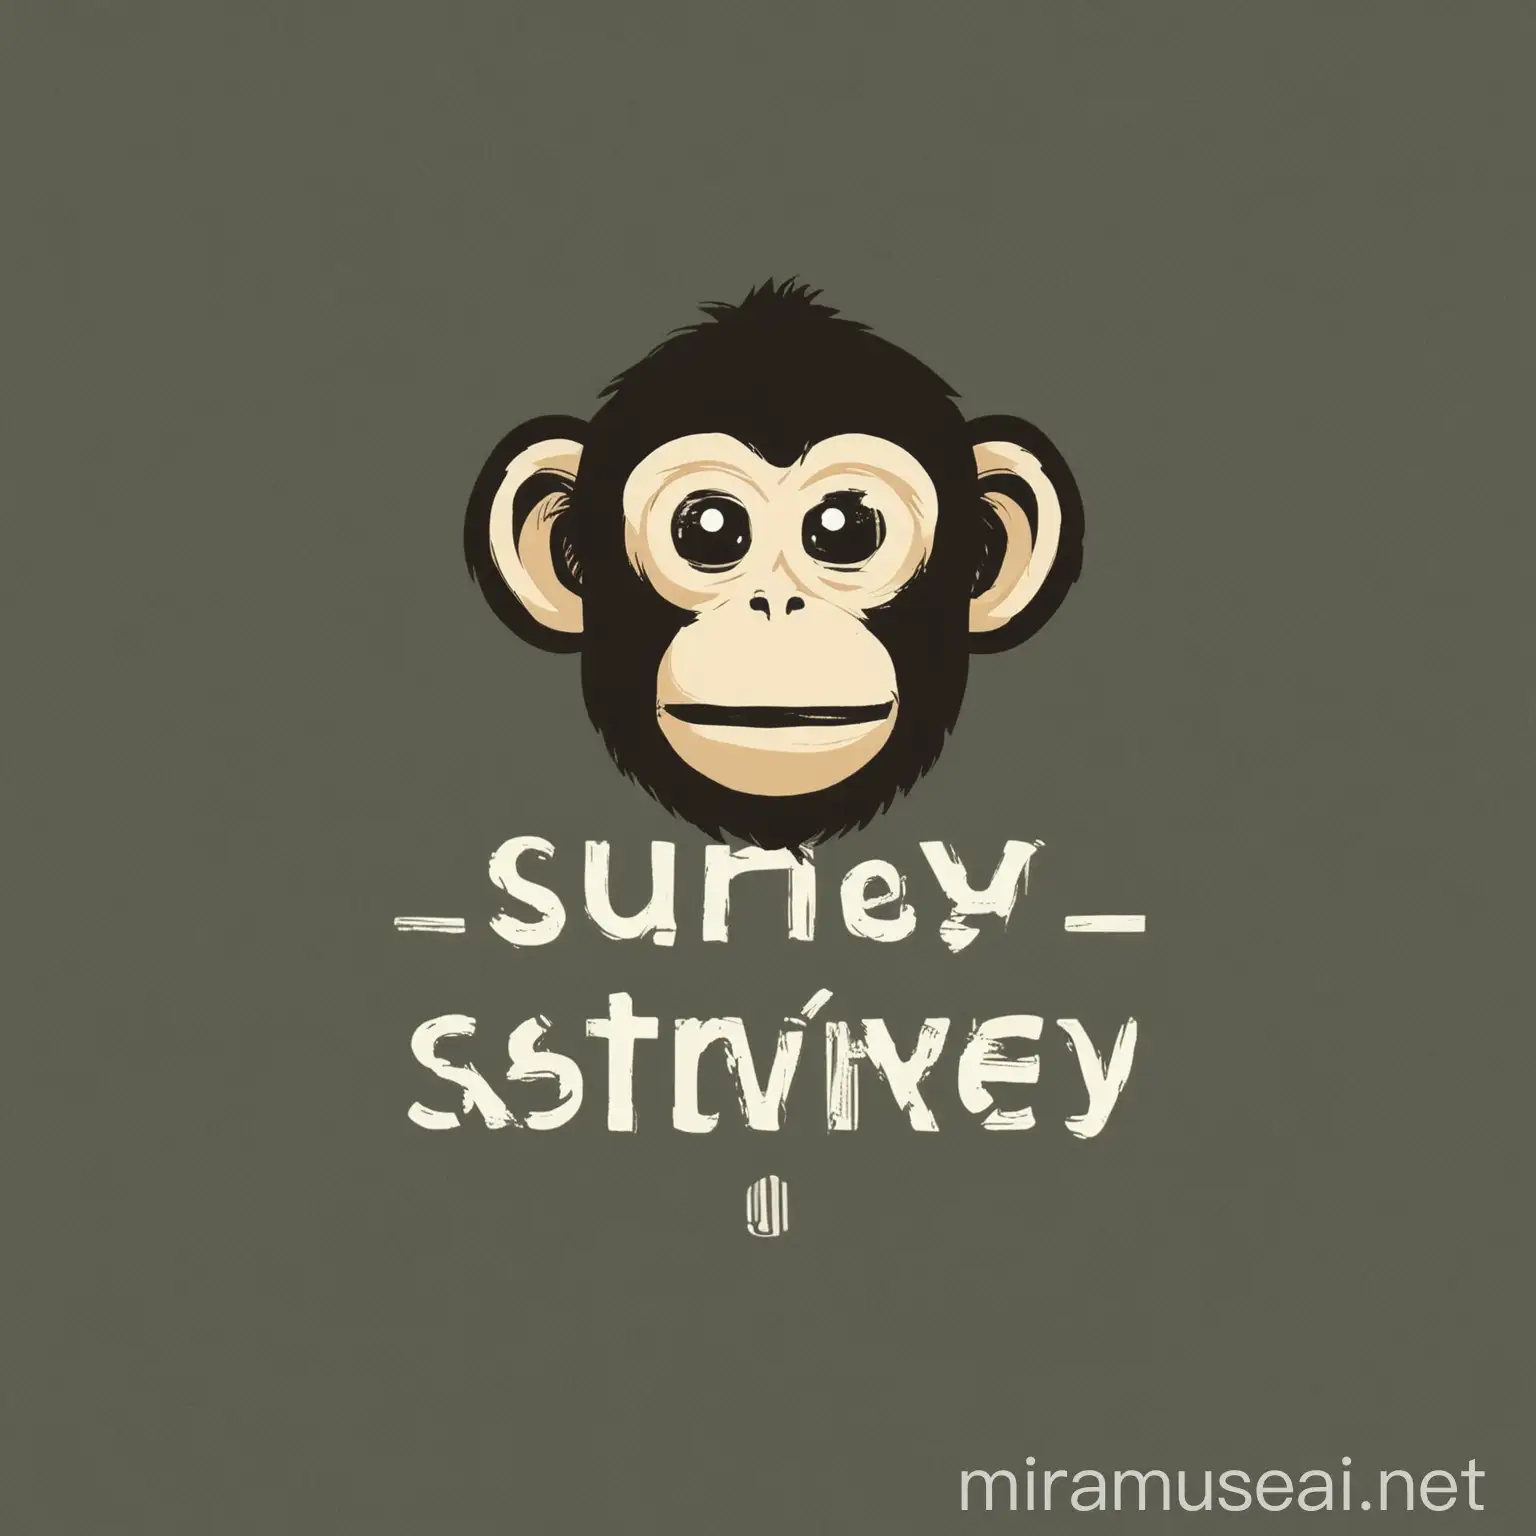 logo for survey website, monkey surveying the people